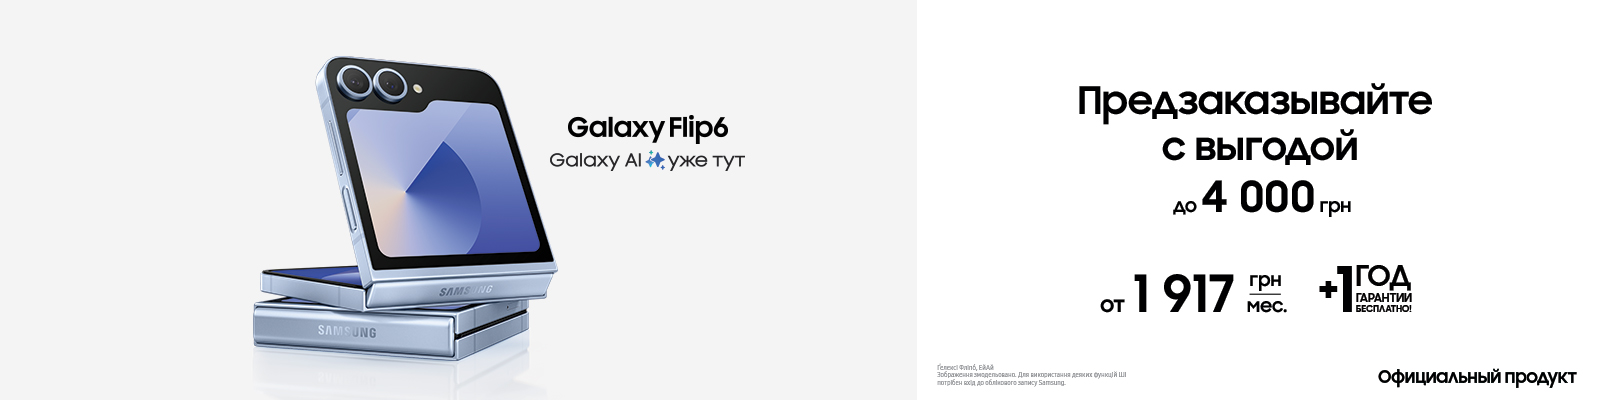 Предзаказывайте с выгодой Galaxy Flip 6